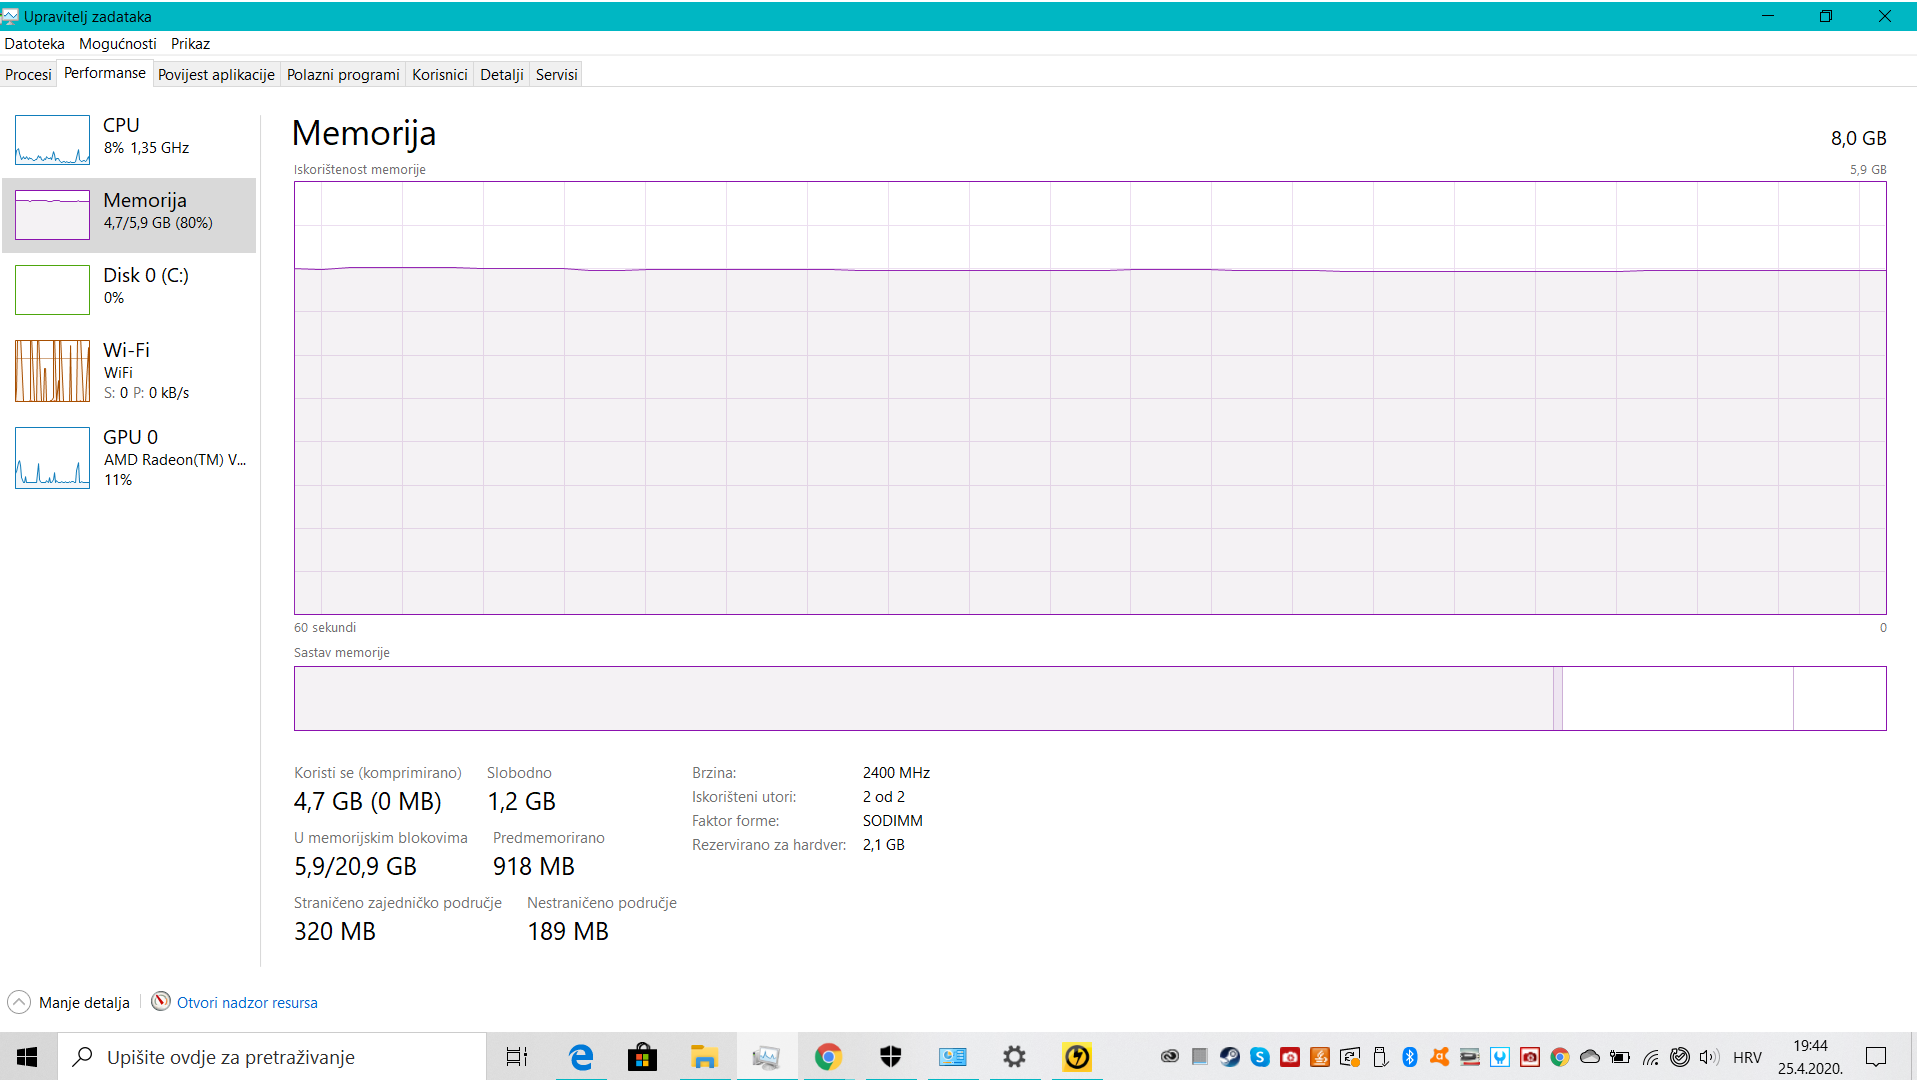 High RAM usage! 95ce3a48-81ae-40db-a4f0-86465cf914f7?upload=true.png